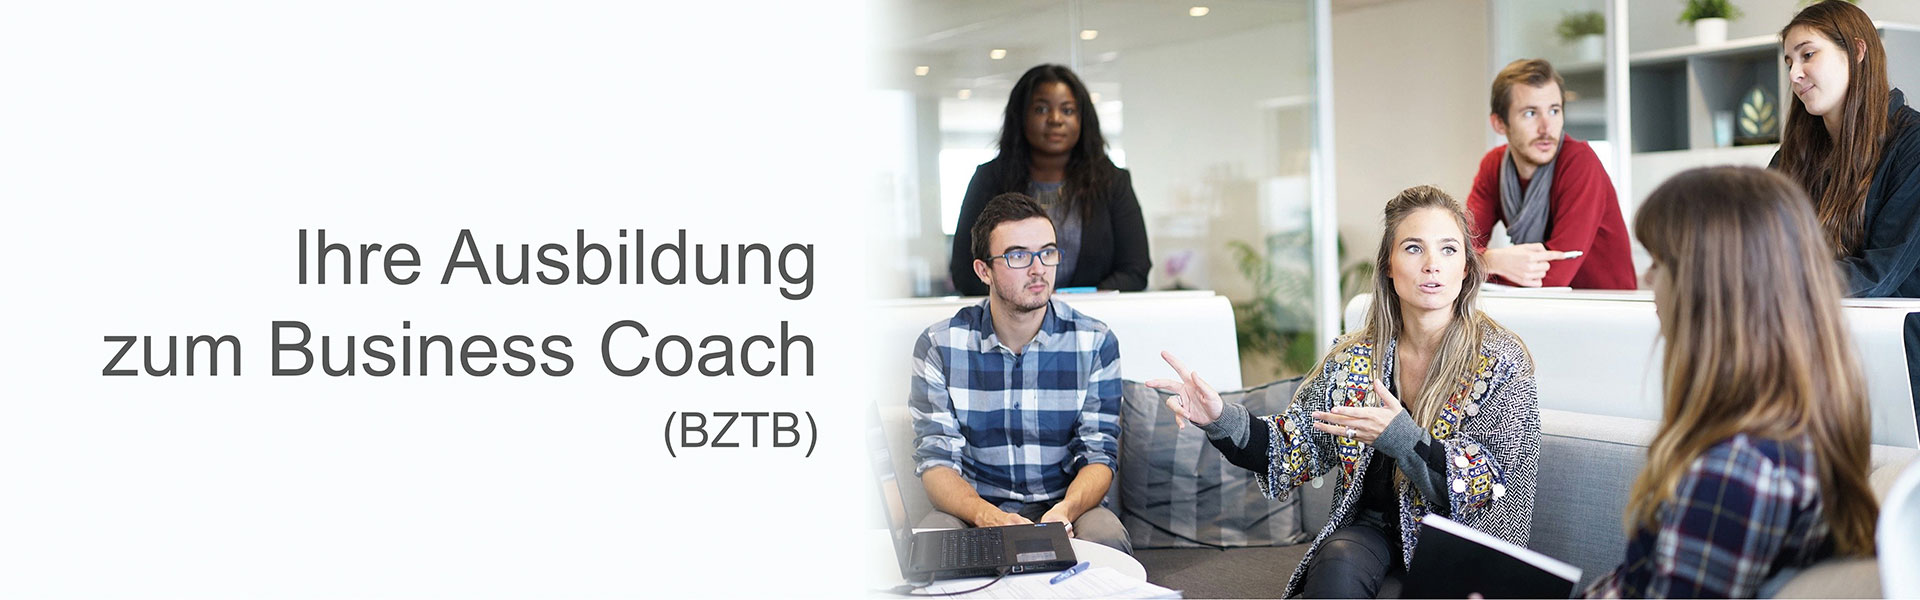 Ihre Ausbildung zum Business Coach (BZTB)